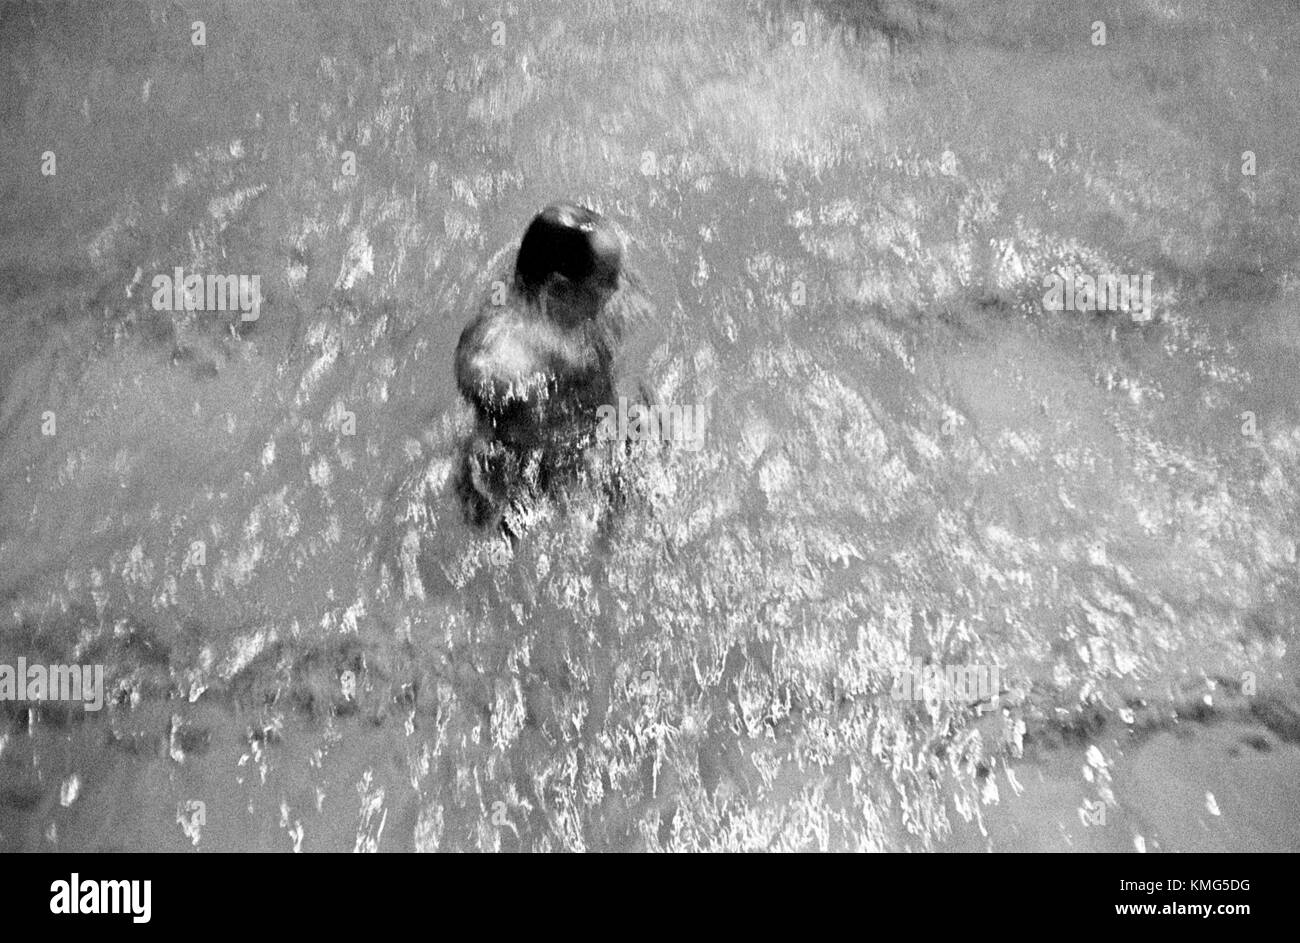 Piscina coperta: Uomo che sale dal fondo della piscina nel 1960s UK HOMER SYKES Foto Stock